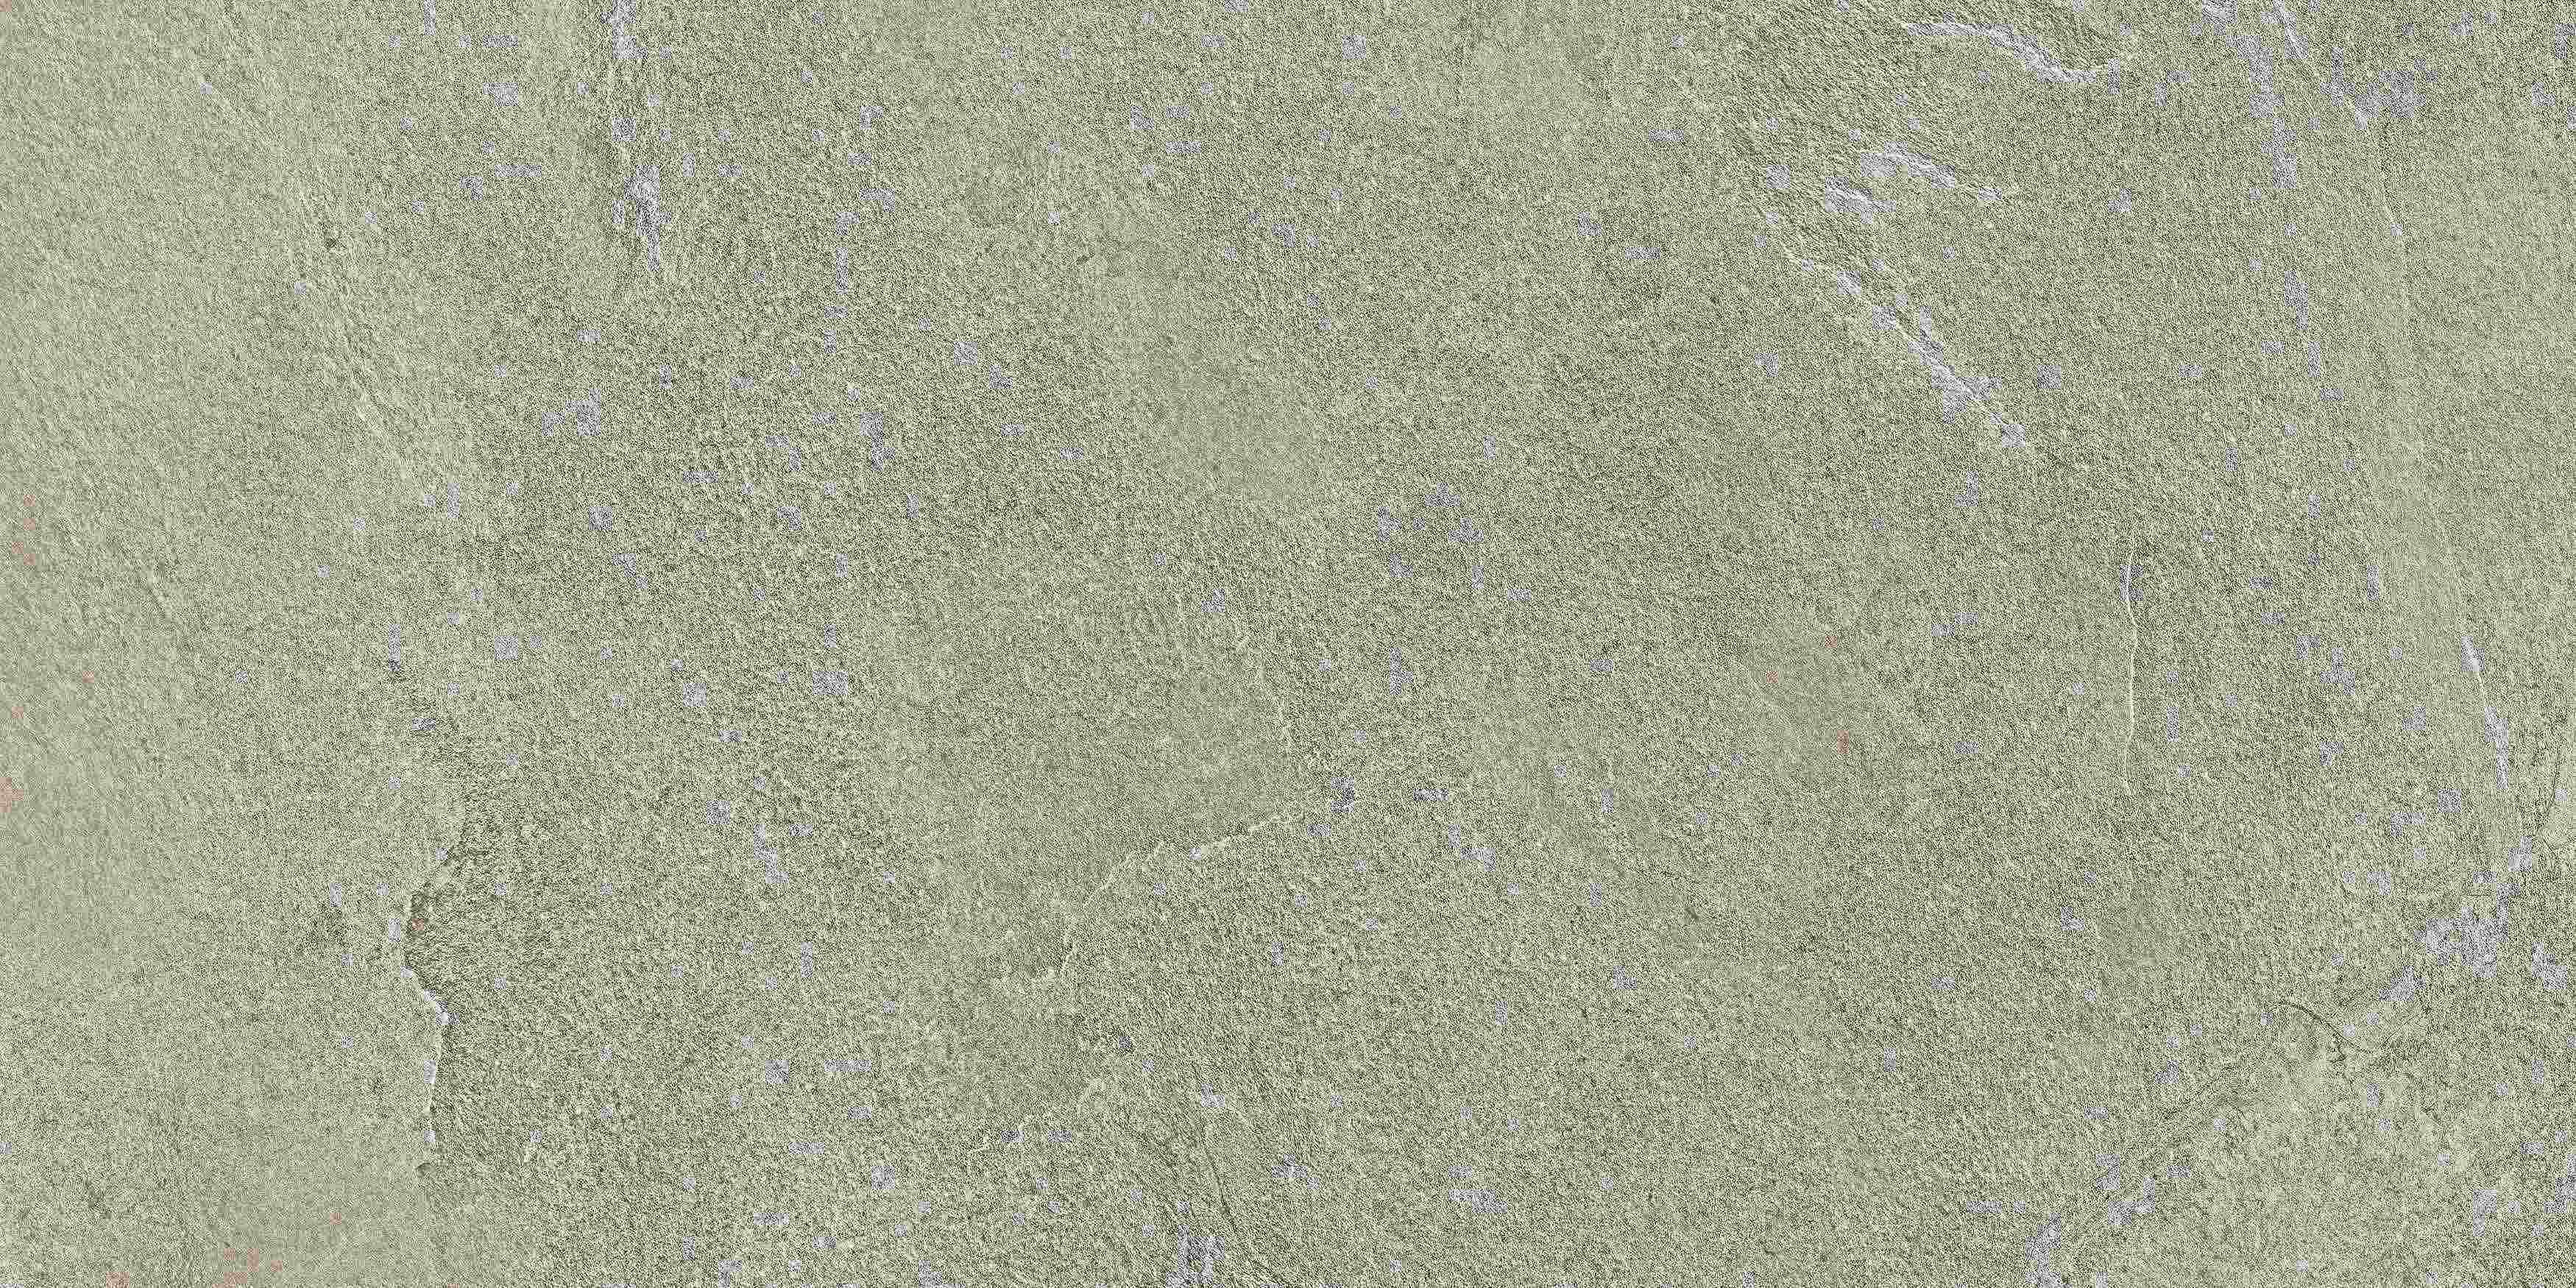 Lea Waterfall Silver Flow Naturale – Antibacterial LGGWFN3 45x90cm rectified 9,5mm